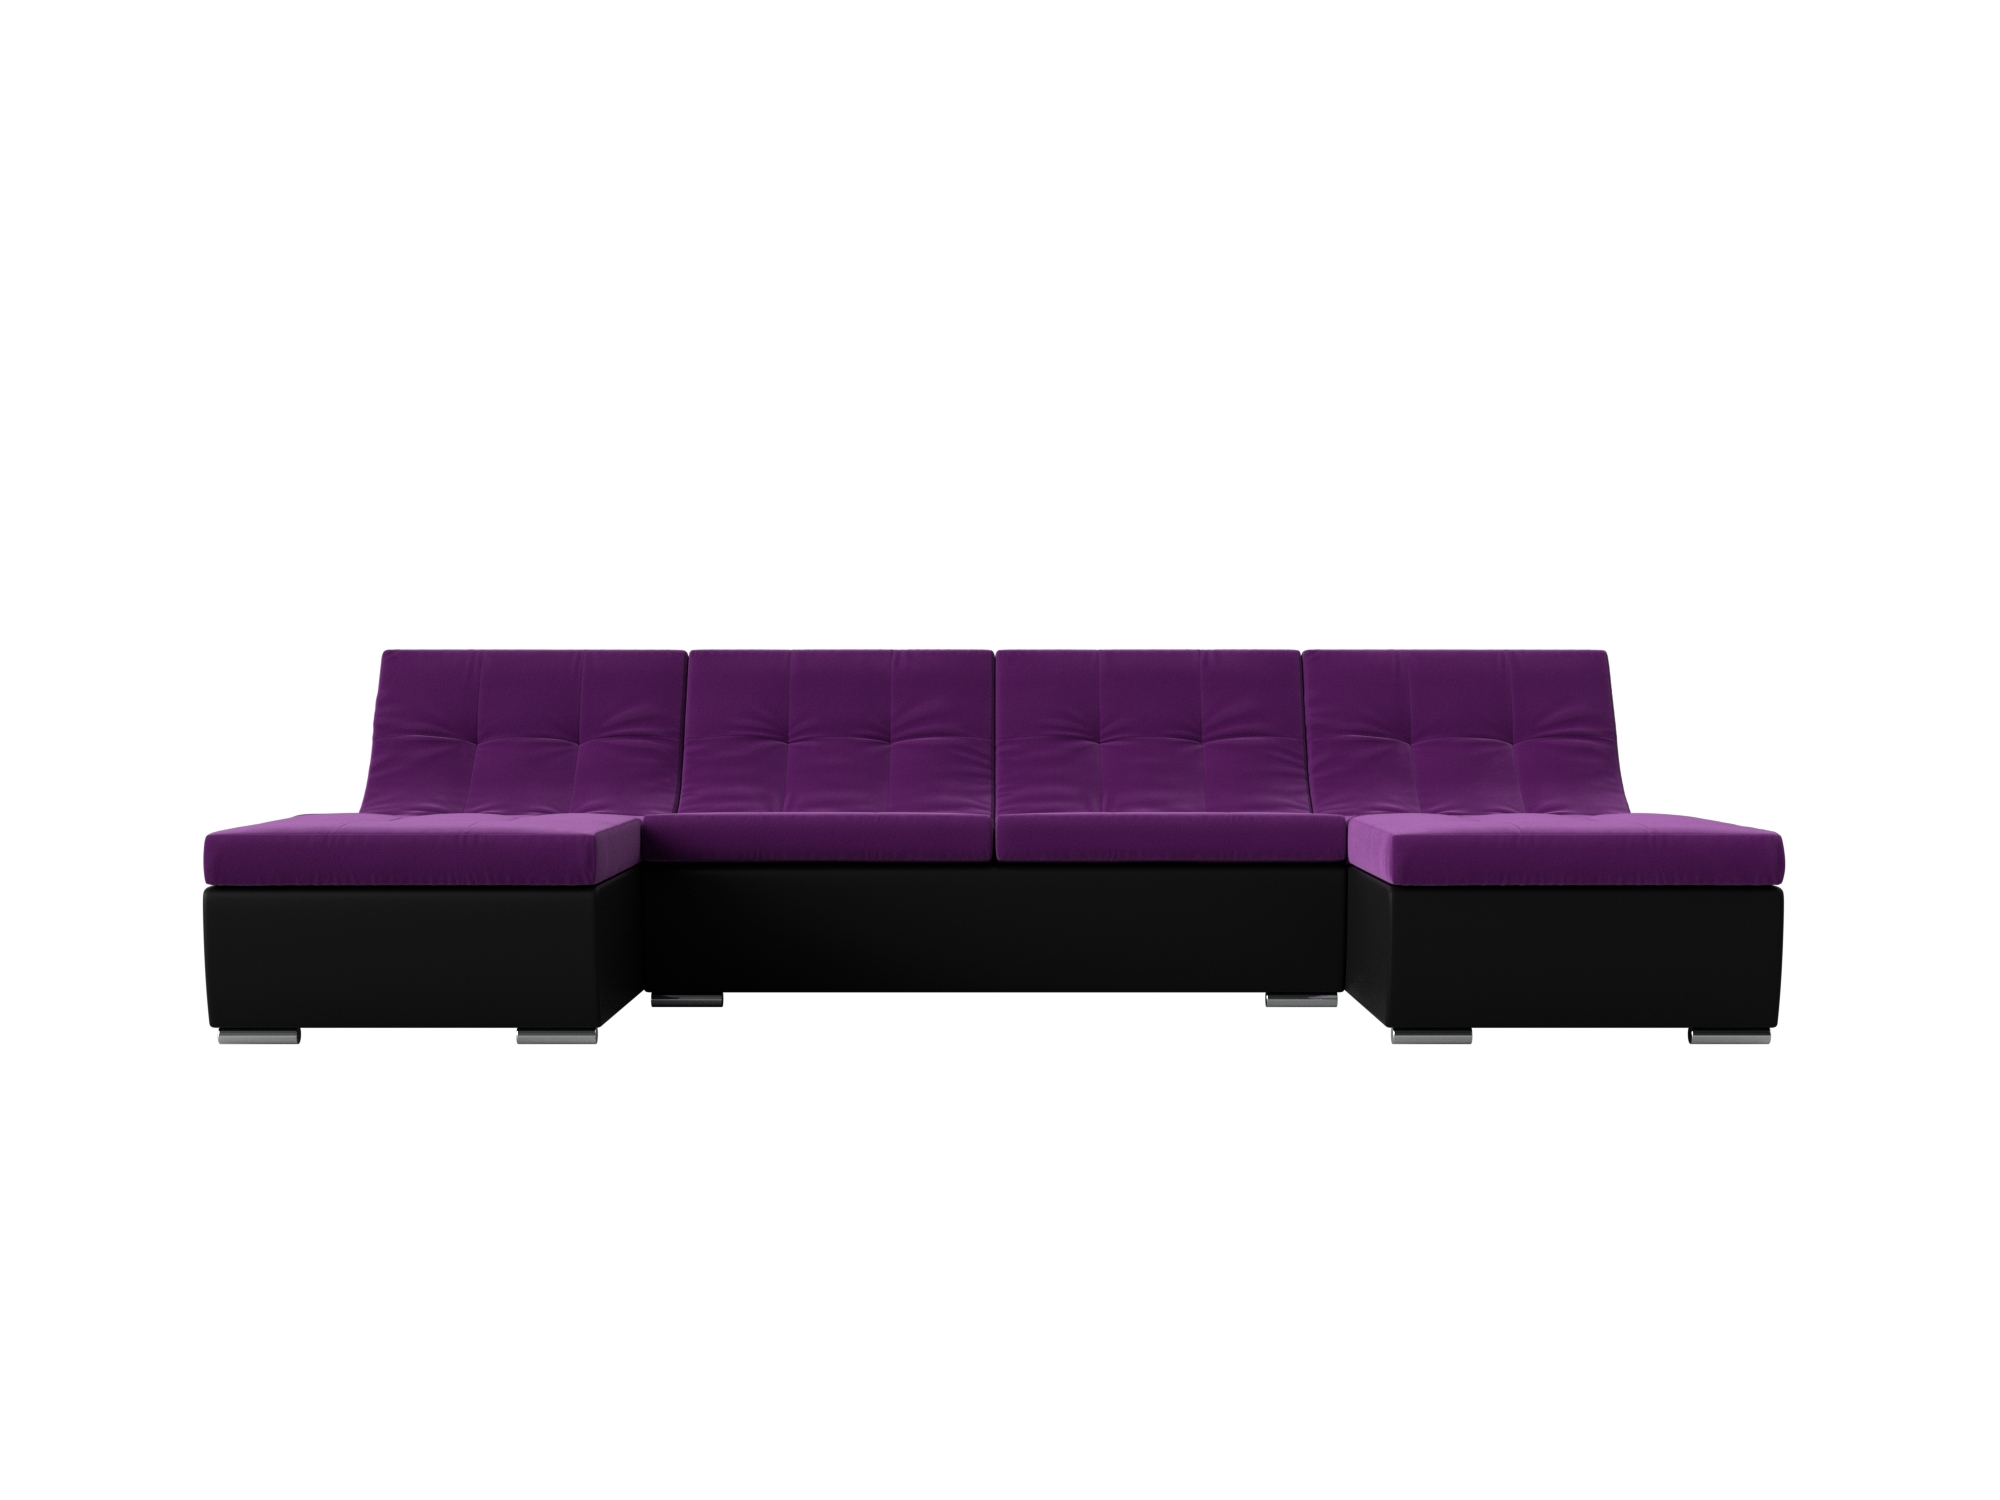 П-образный модульный диван Монреаль MebelVia Фиолетовый, Черный, Микровельвет, Экокожа, ЛДСП п образный модульный диван монреаль long mebelvia фиолетовый черный микровельвет экокожа лдсп